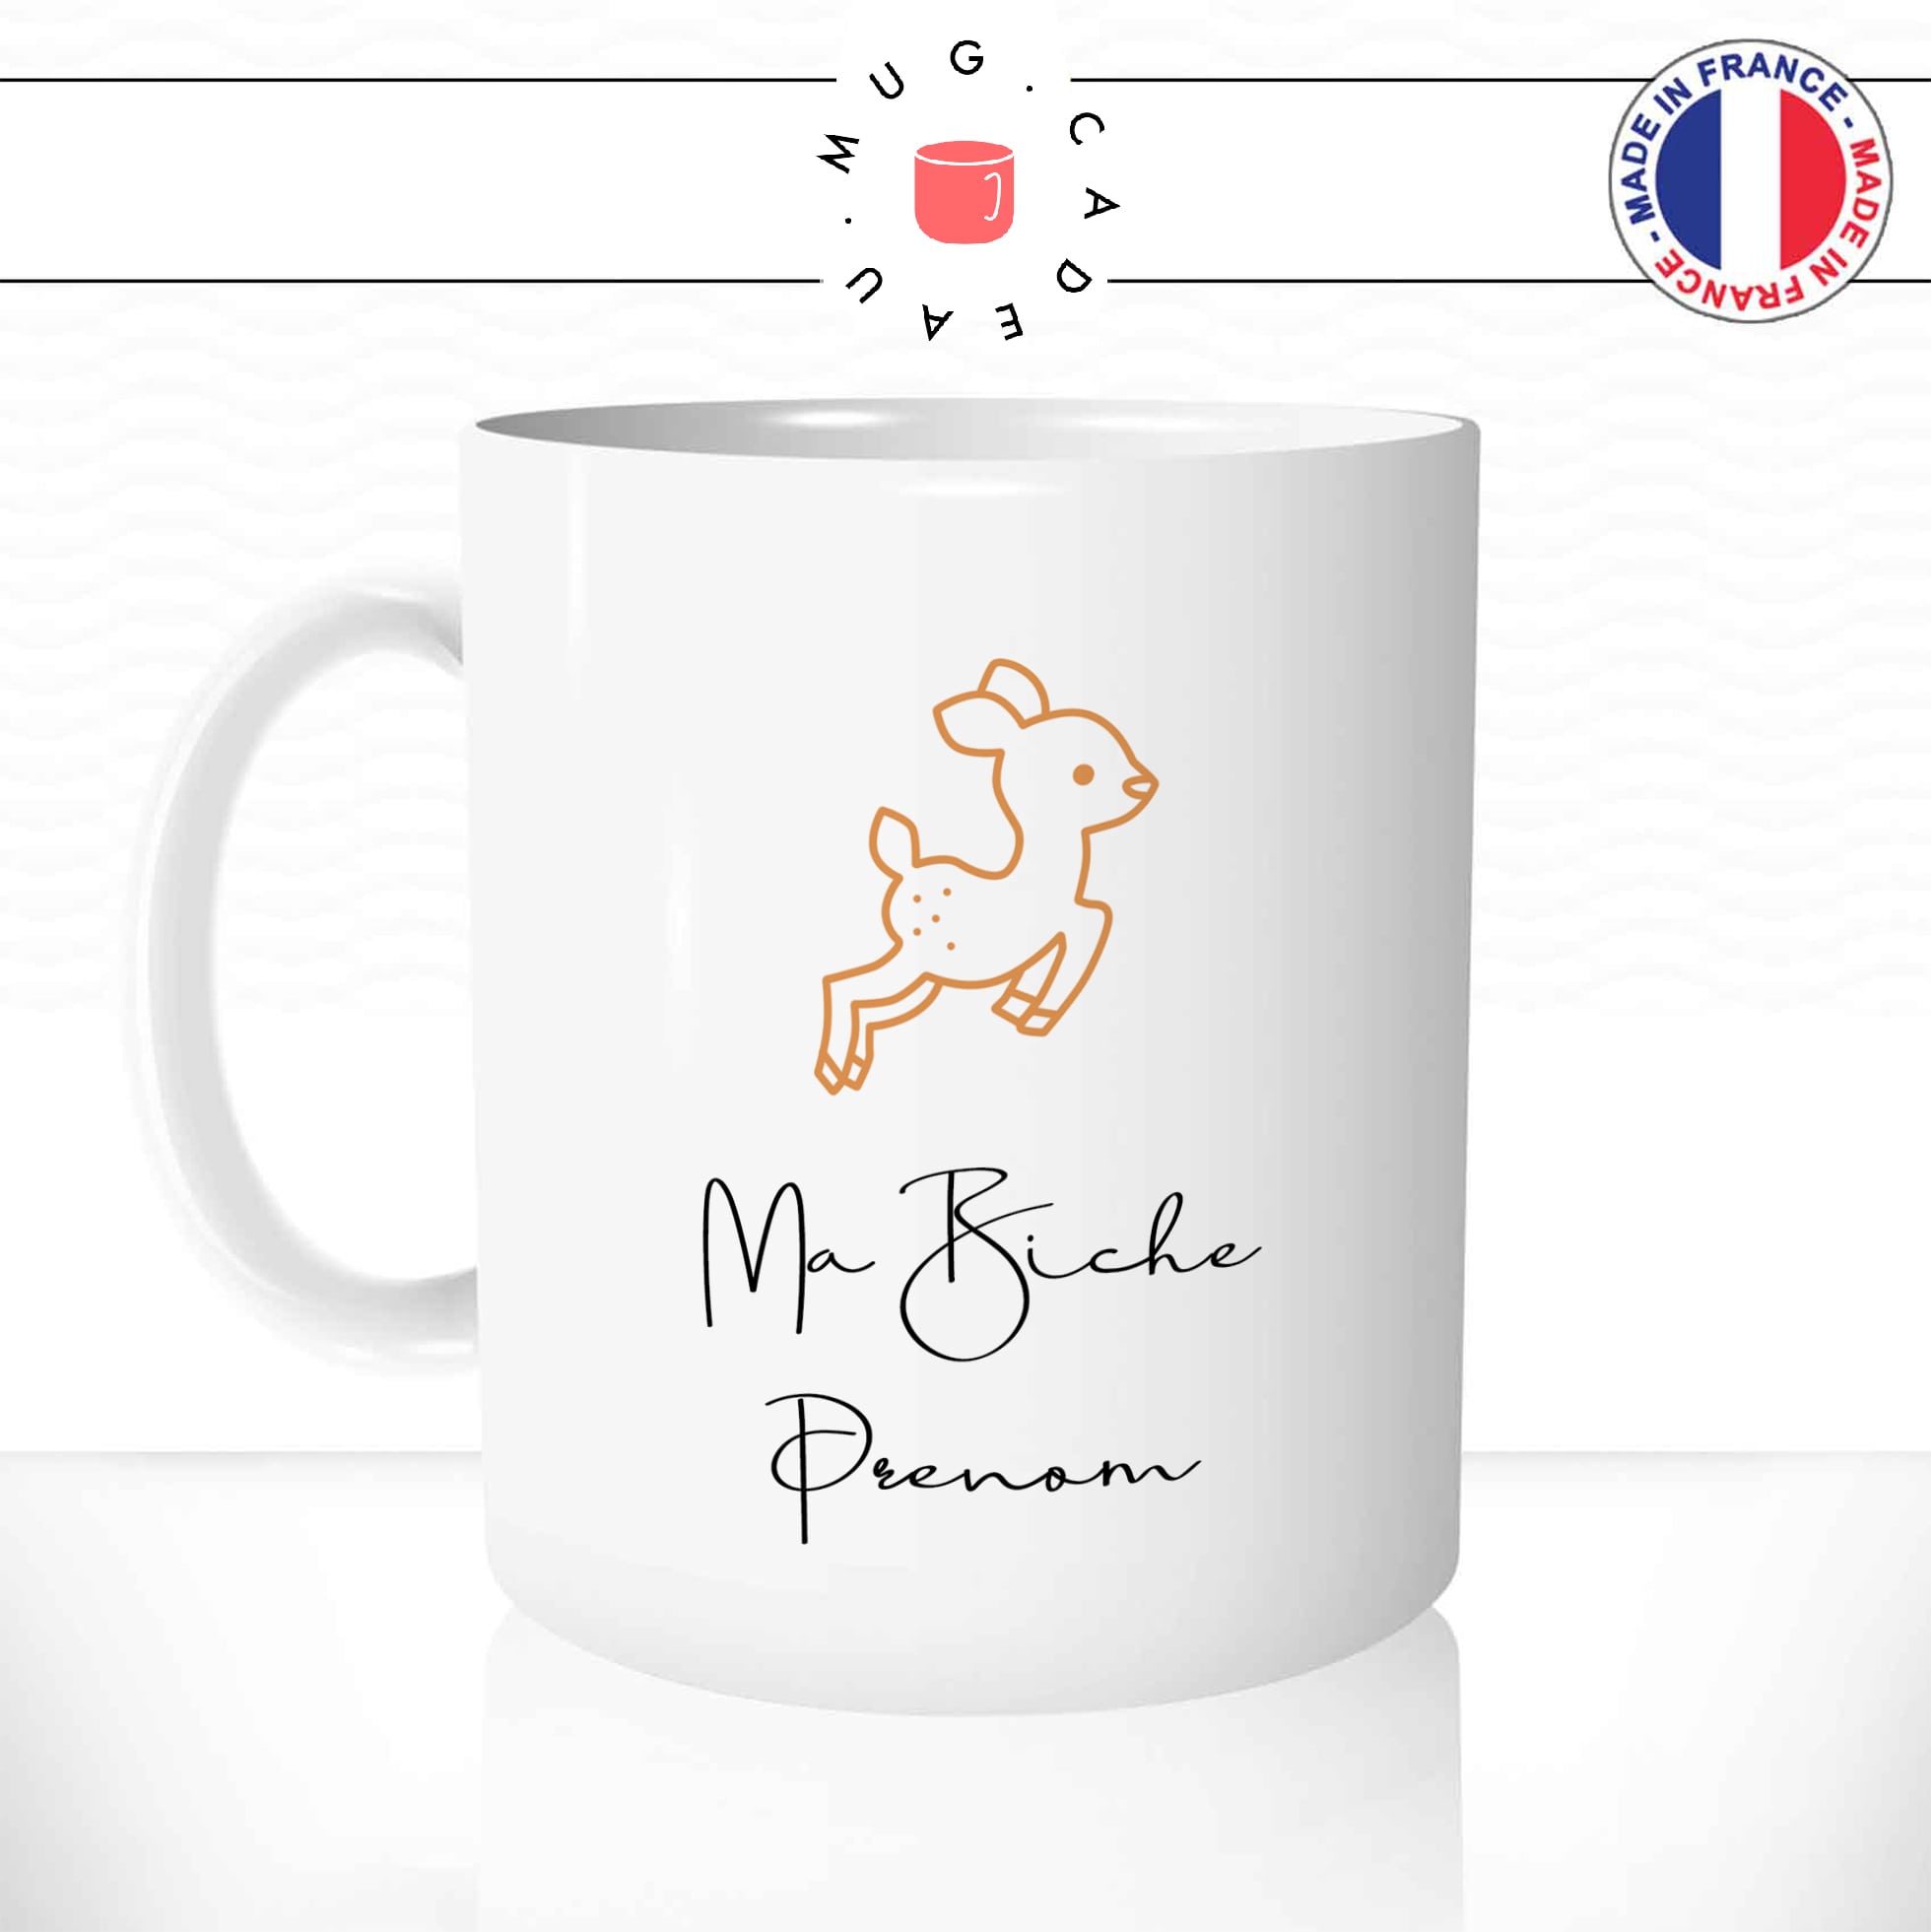 mug-tasse-animal-biche-faon-ma-bichette-drole-mignon-dessin-animé-classique-culte-cool-fun-mugs-tasses-café-thé-idée-cadeau-original-prénom-personnalisé-personnalisable